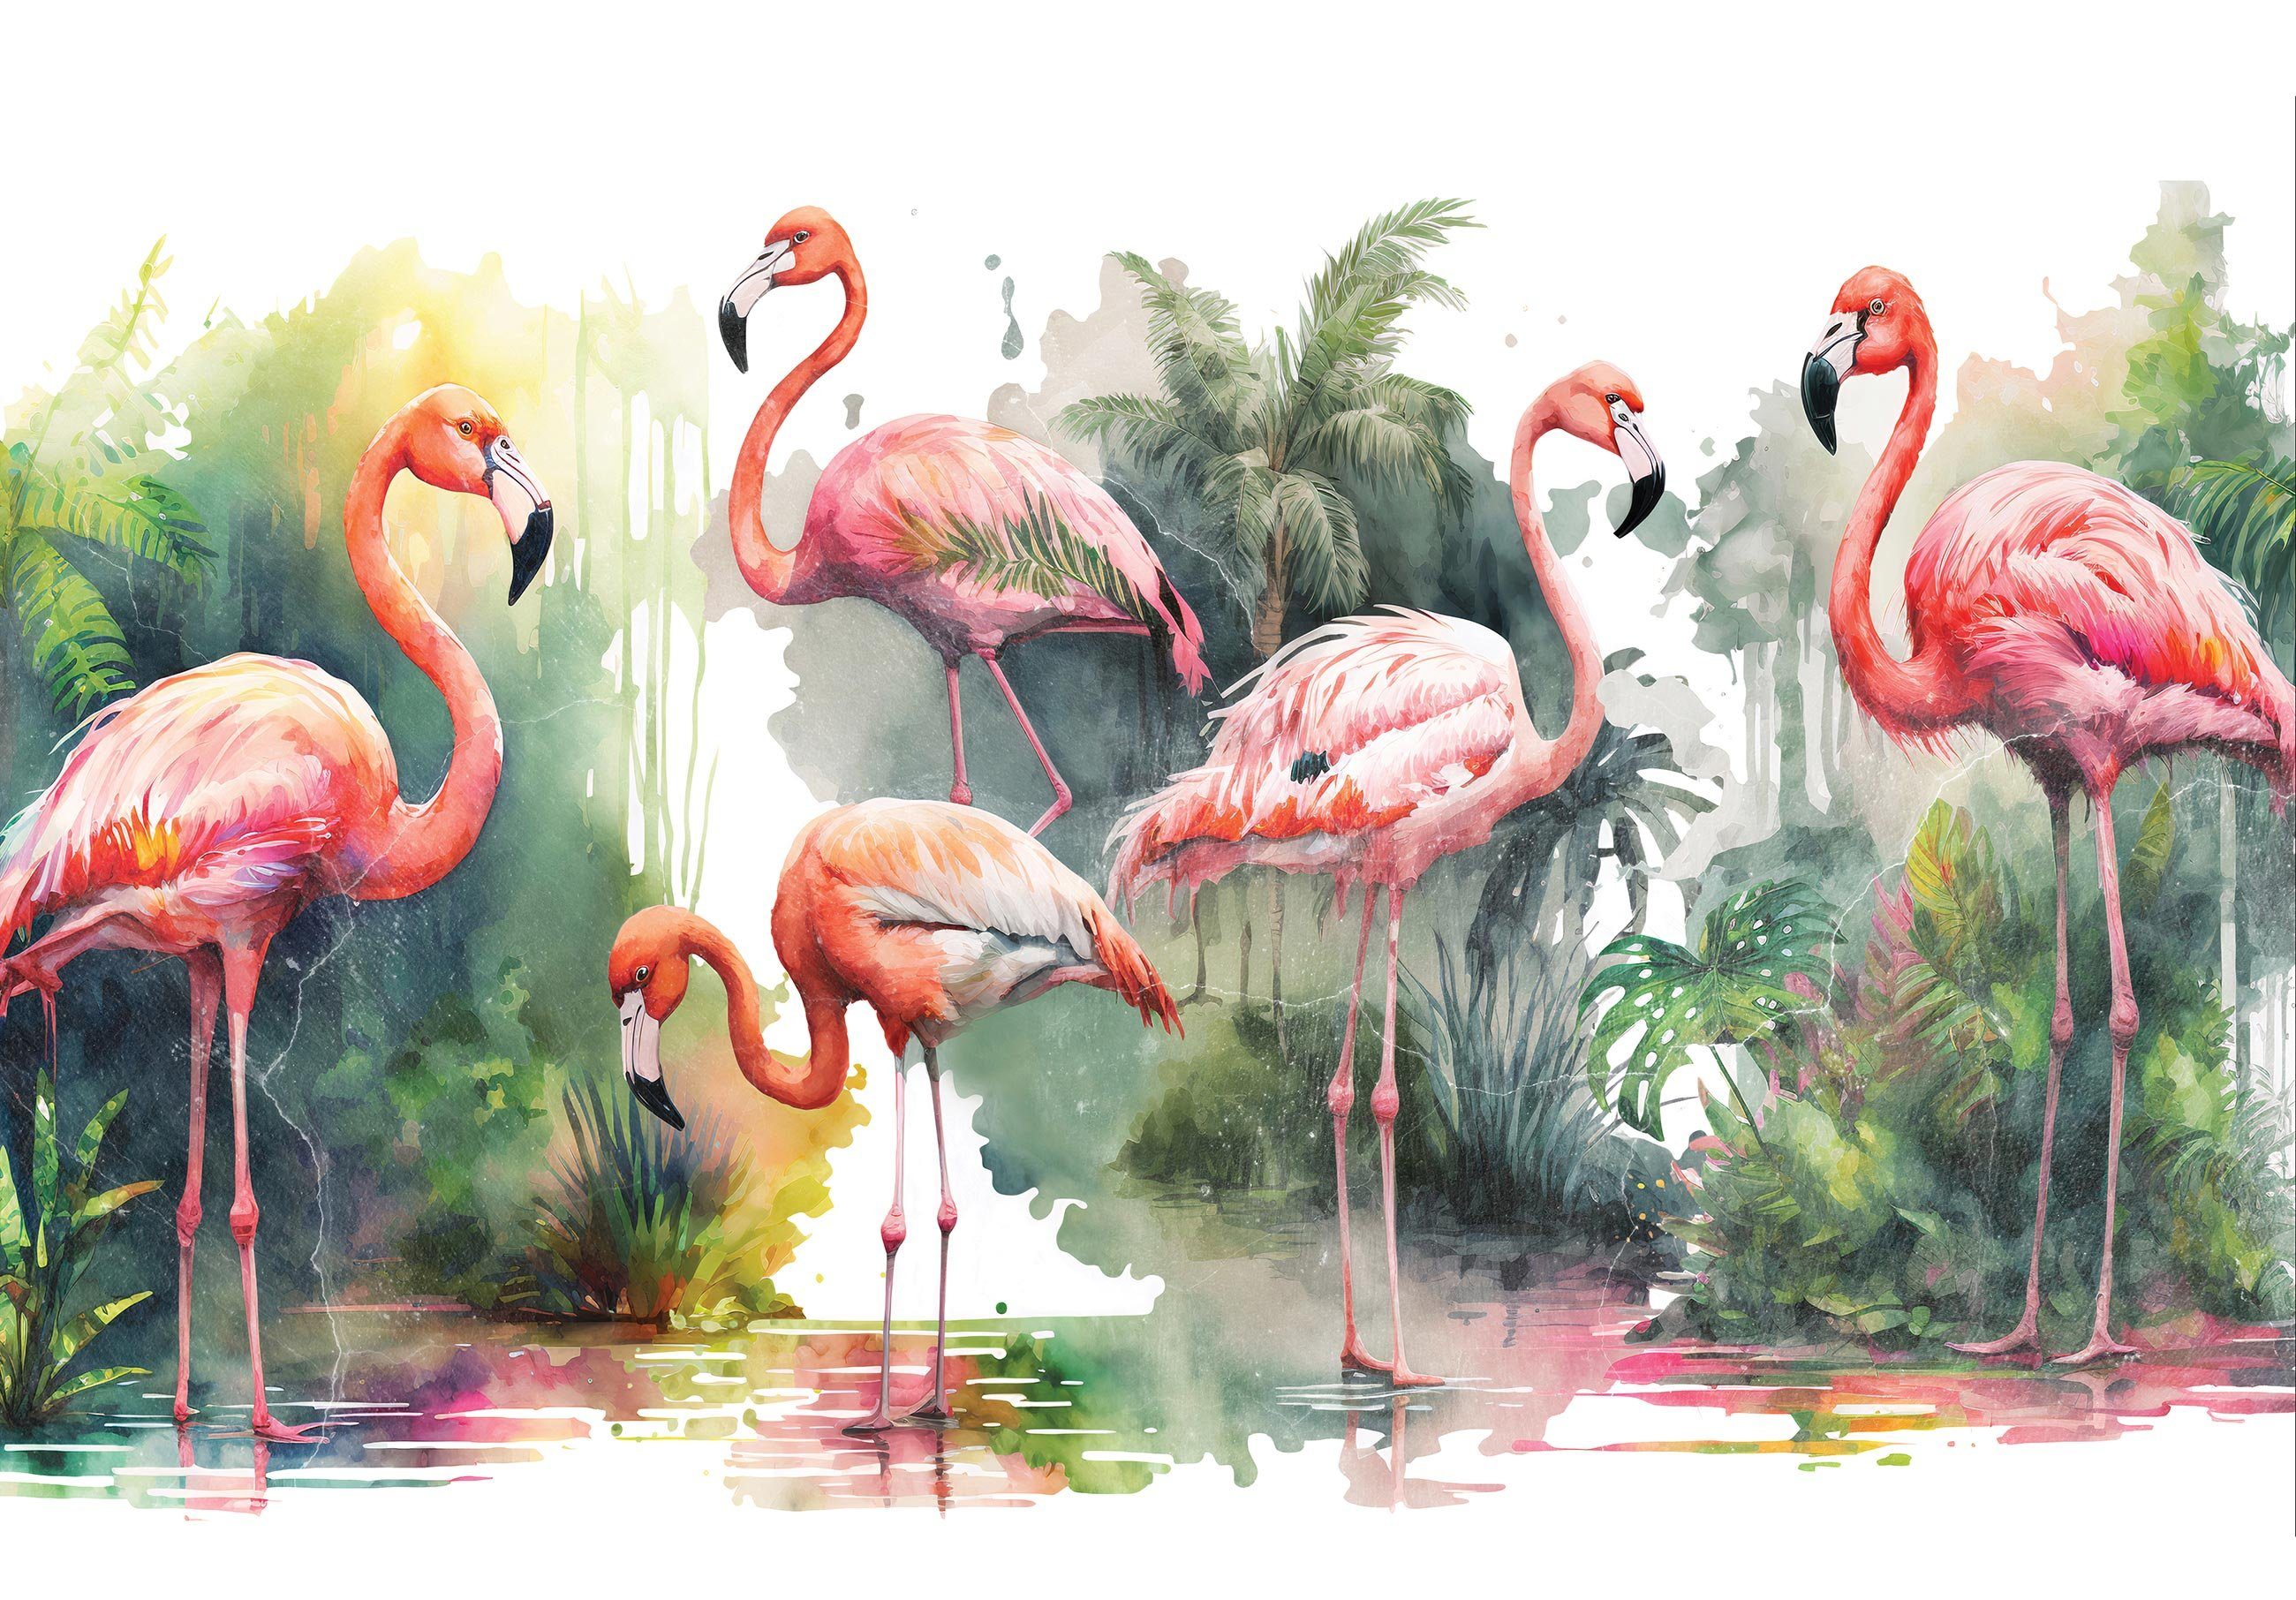 Wallarena Fototapete Flamingo Dschungel inklusive Vögel, Kleister Vliestapete Glatt, Wandtapete, Tropisch, Vlies Tapete Wohnzimmer Schlafzimmer